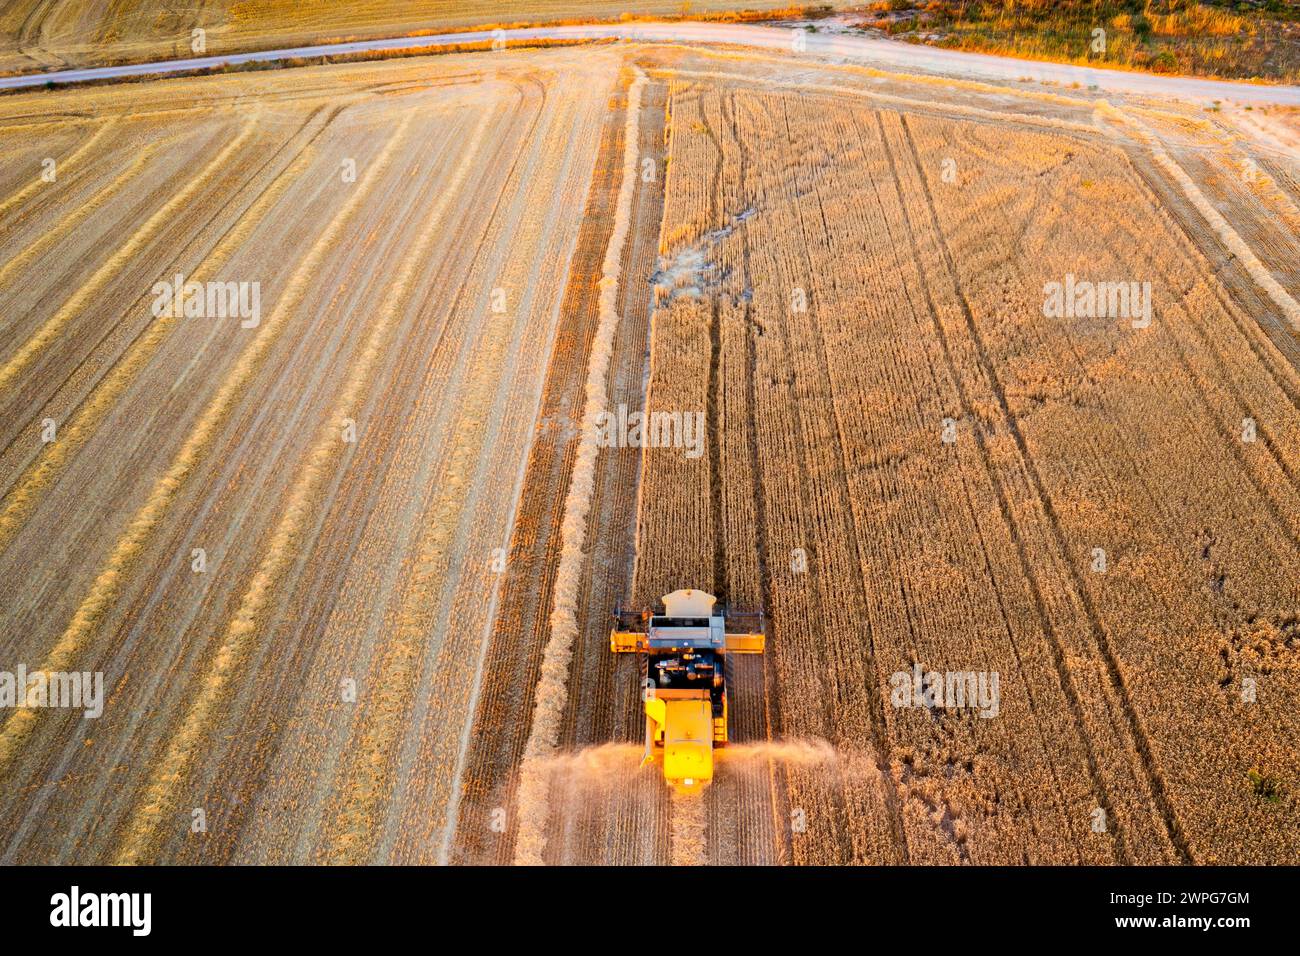 Vue aérienne de la moissonneuse-batteuse récoltant le blé. Banque D'Images